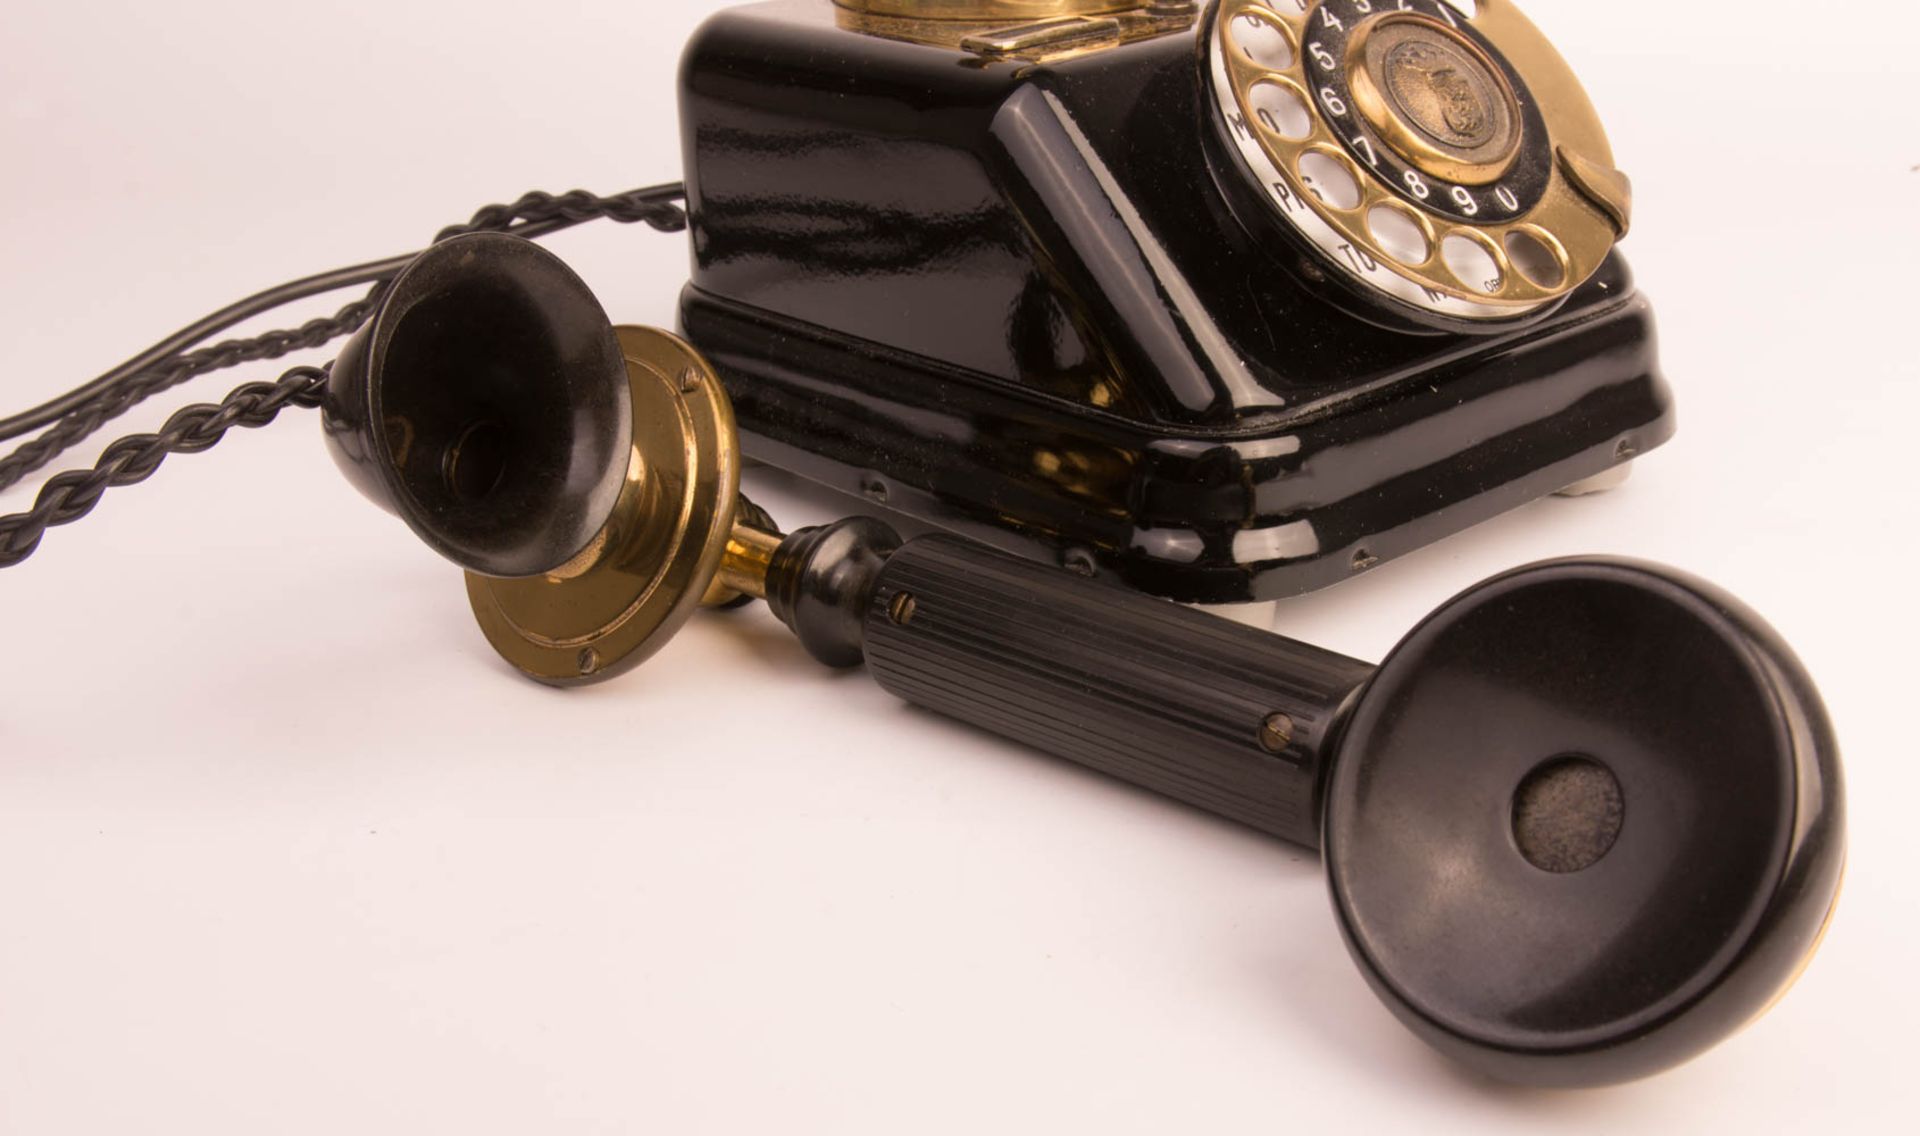 Copenhagen Expoga Wählscheibentelefon in schwarz und gold, 20. Jhd. - Bild 5 aus 8